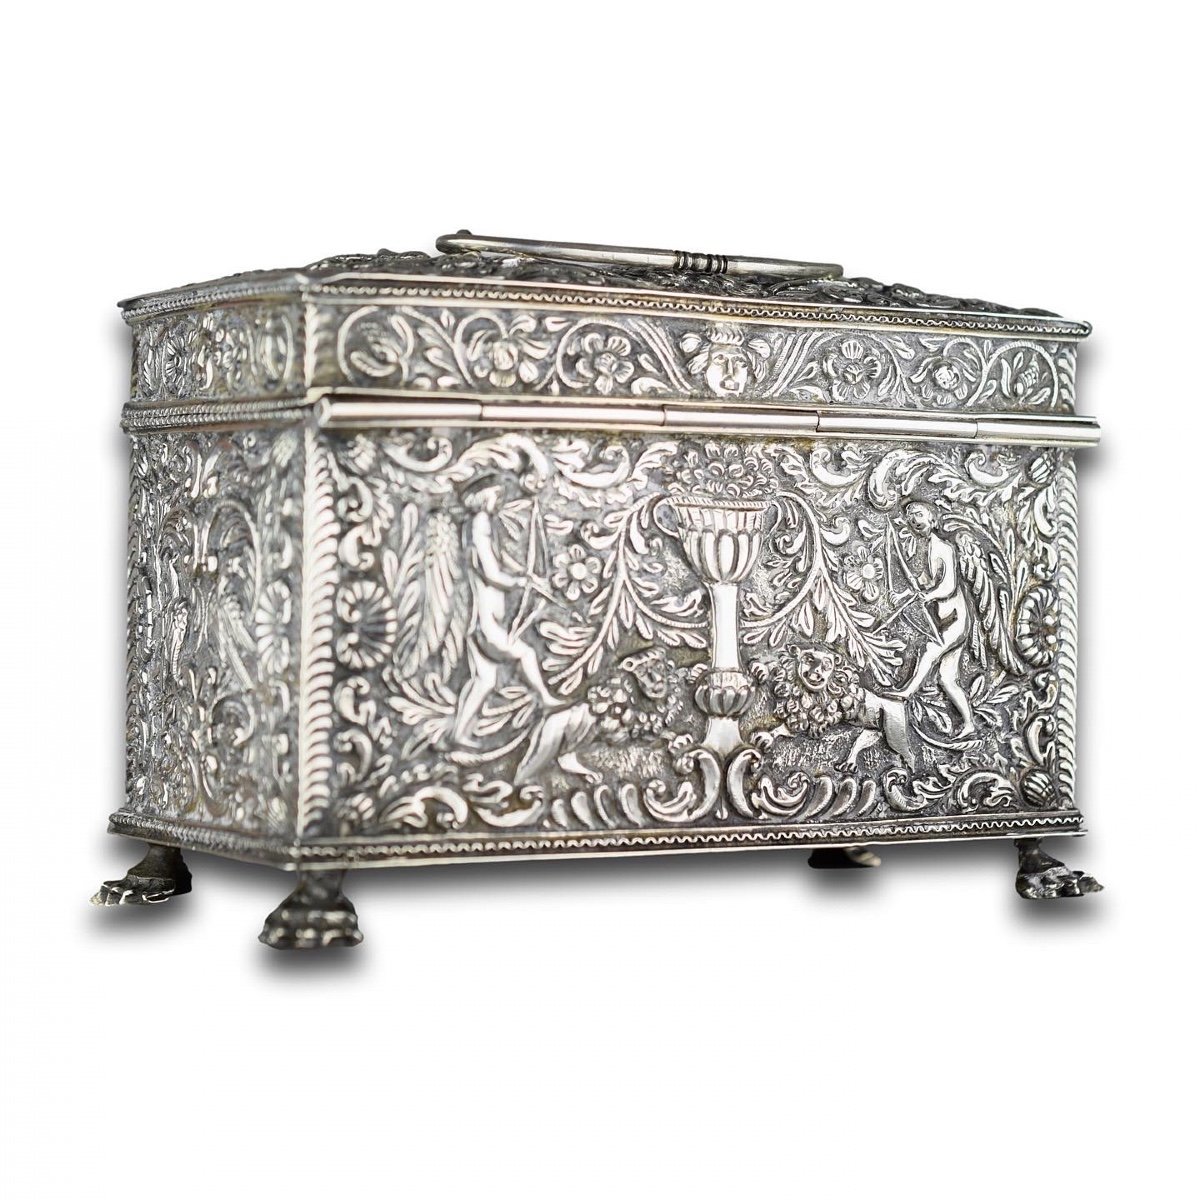 Proantic: Repoussé Silver Marriage Casket. Dutch, 19th Century.